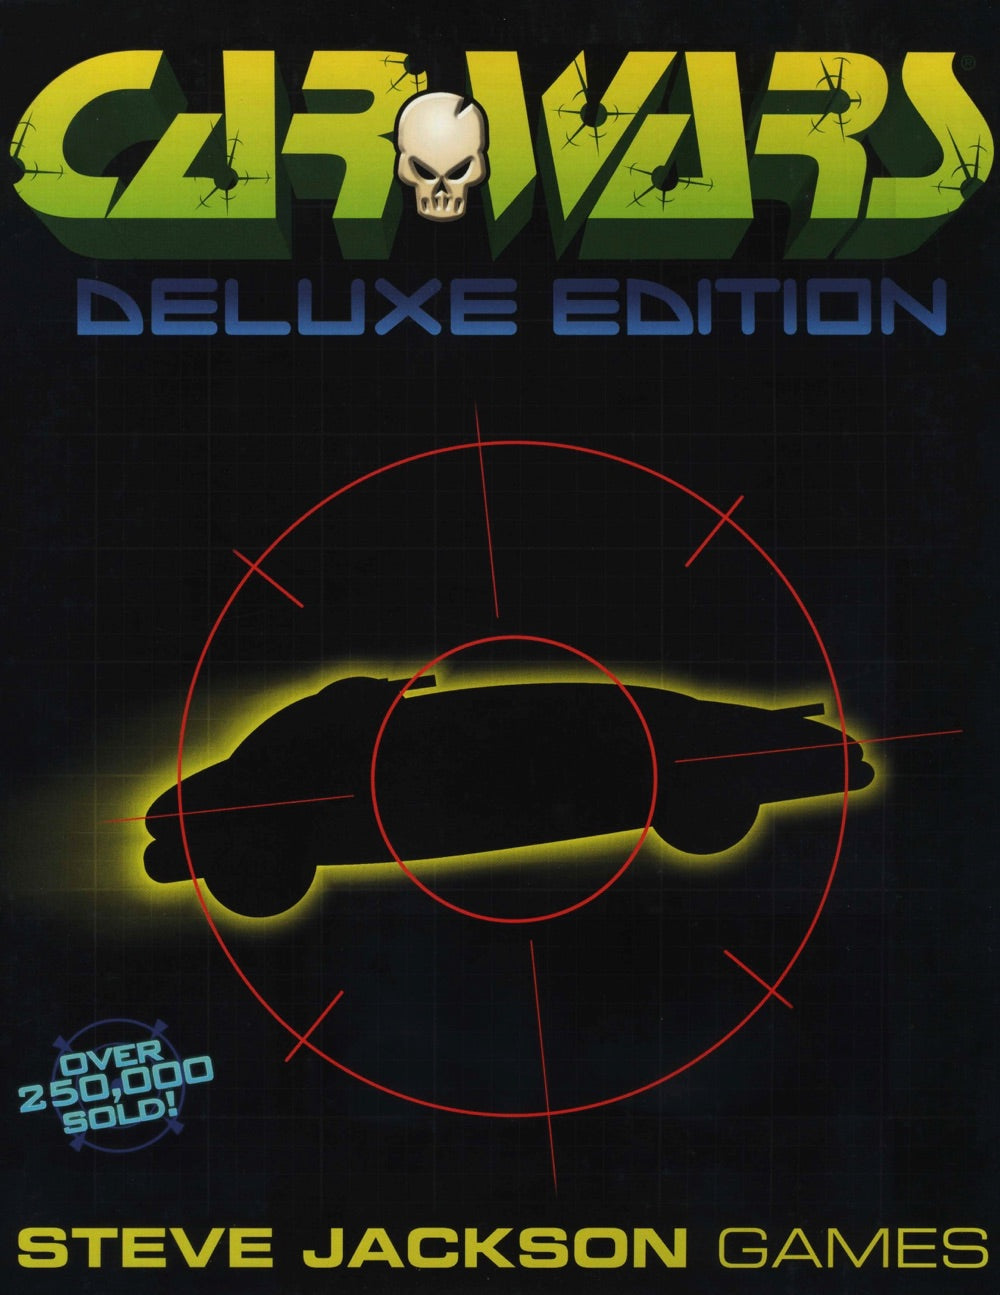 Car Wars - Deluxe Edition (Car Wars Compendium Upgrade)